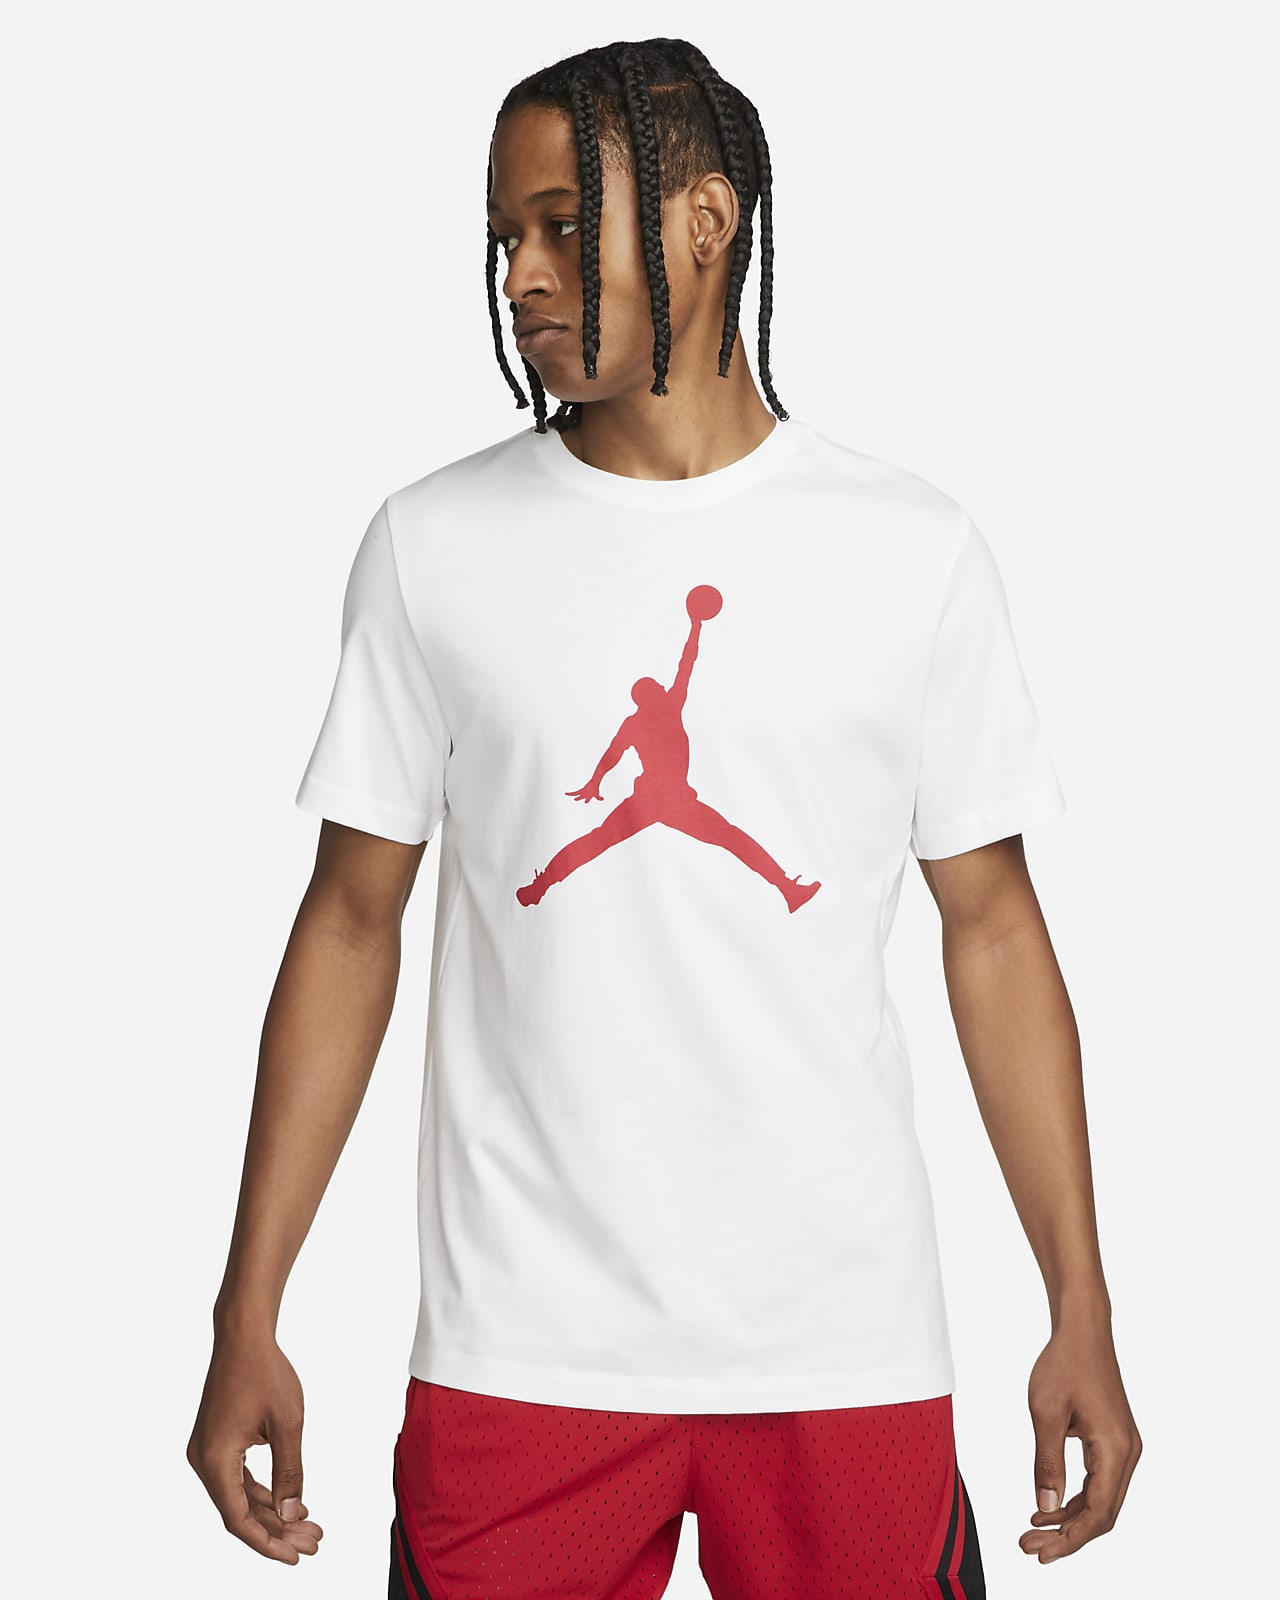 jordan jumpman photo t shirt